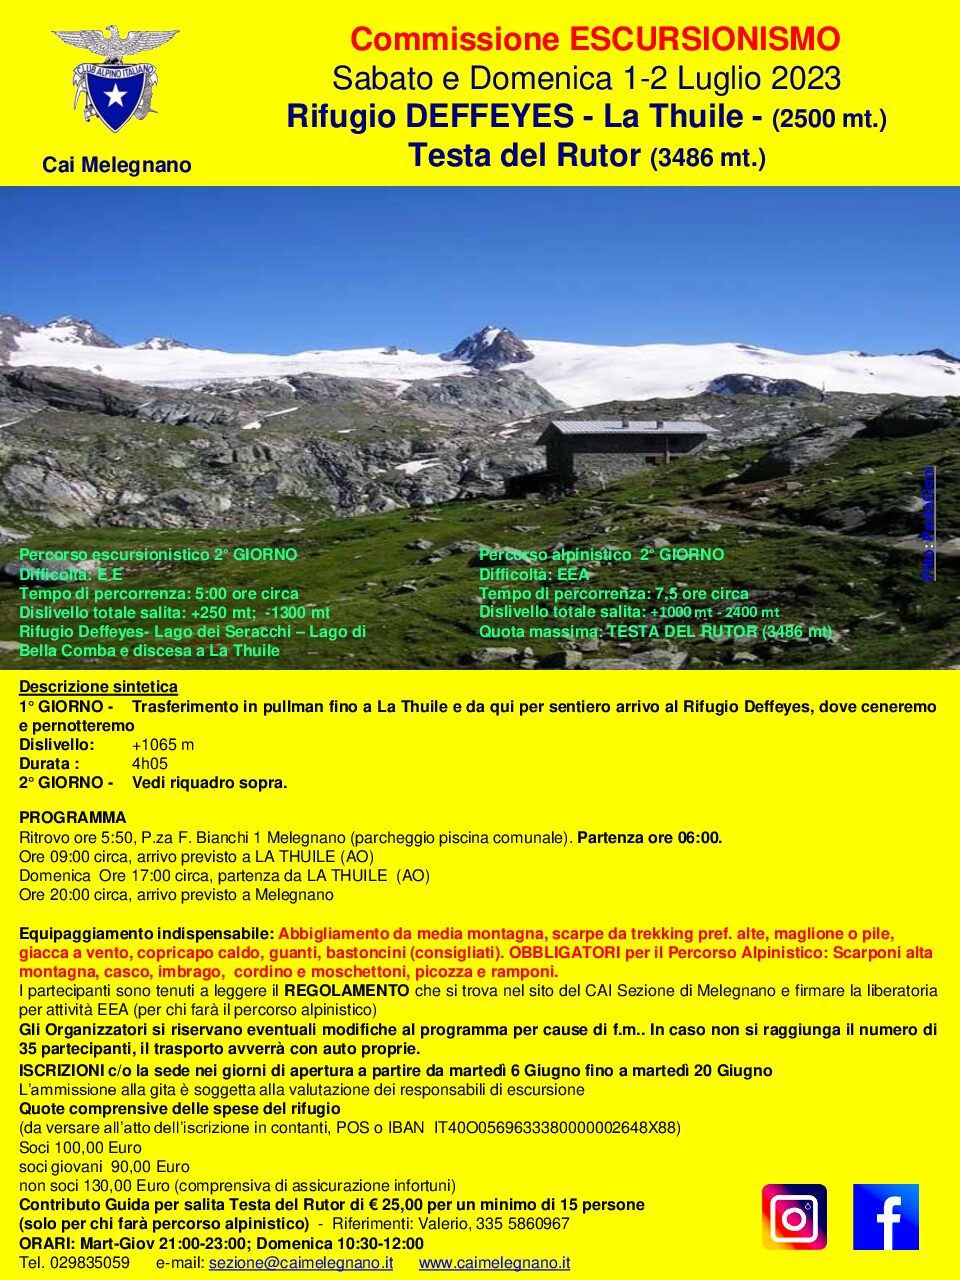 Rifugio DEFFEYES – La Thuile – (2500 mt.) Testa del Rutor (3486 mt.)